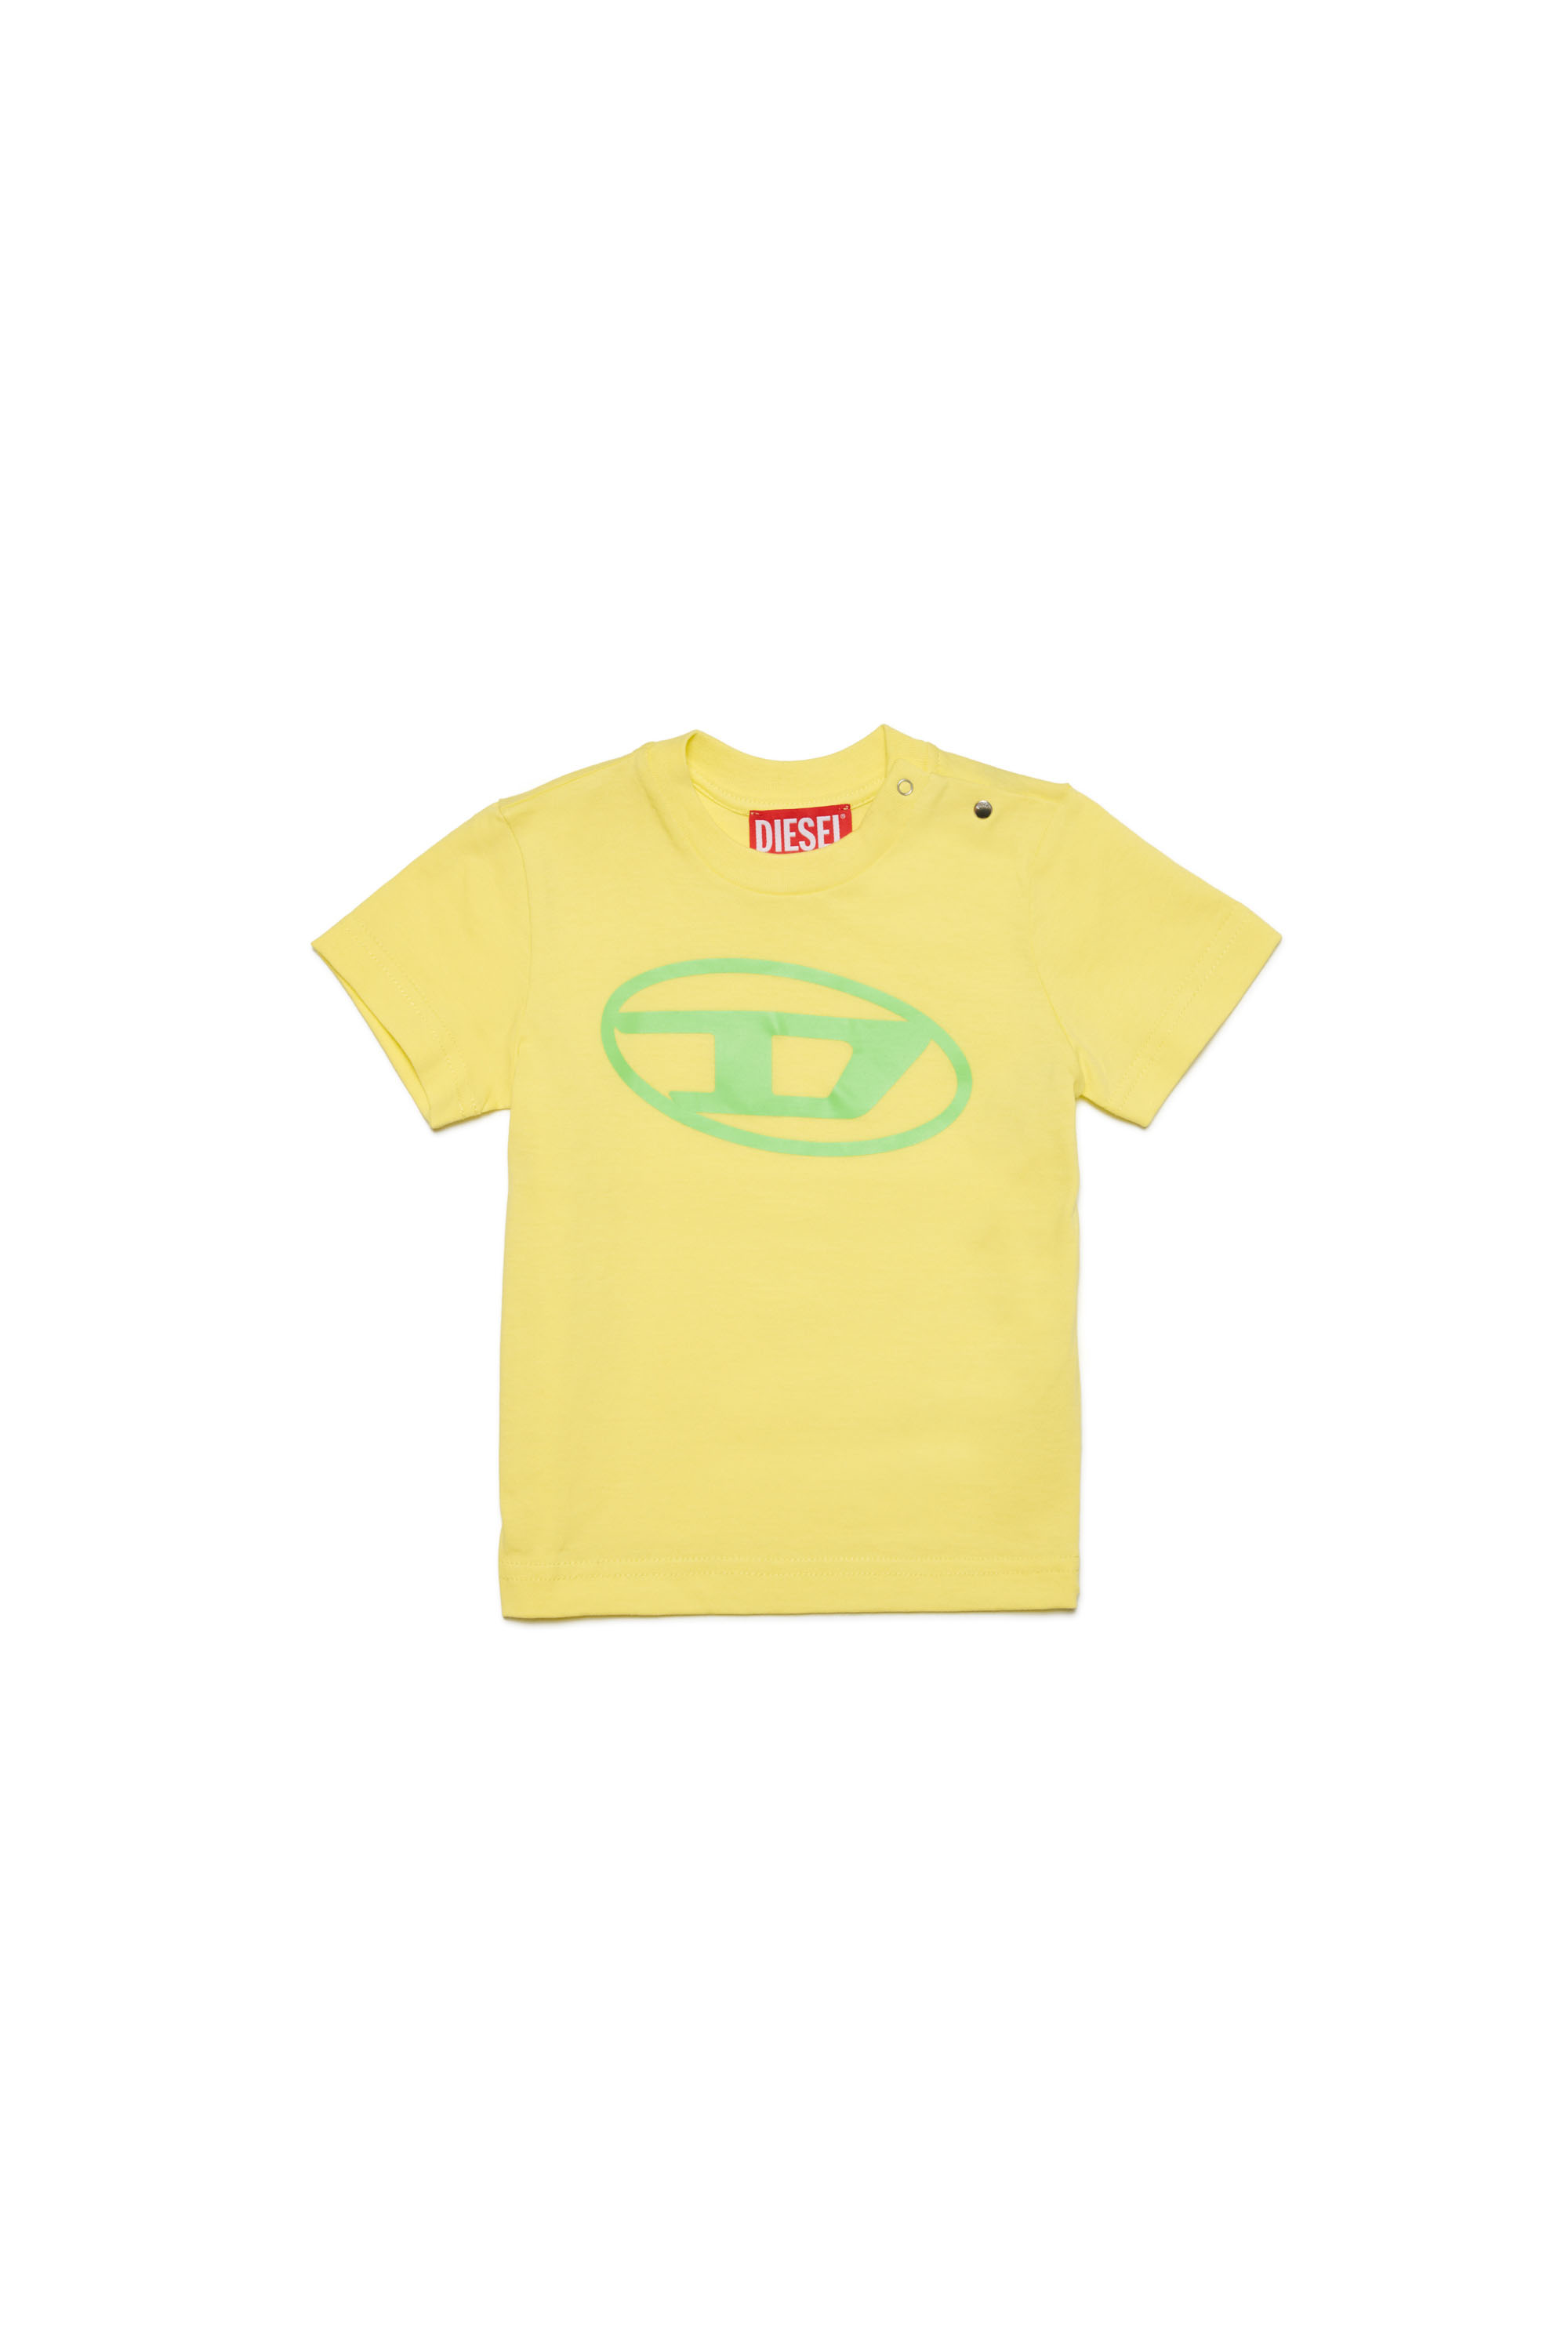 Diesel - T-Shirt mit Oval D-Logo - T-Shirts und Tops - Unisex - Gelb